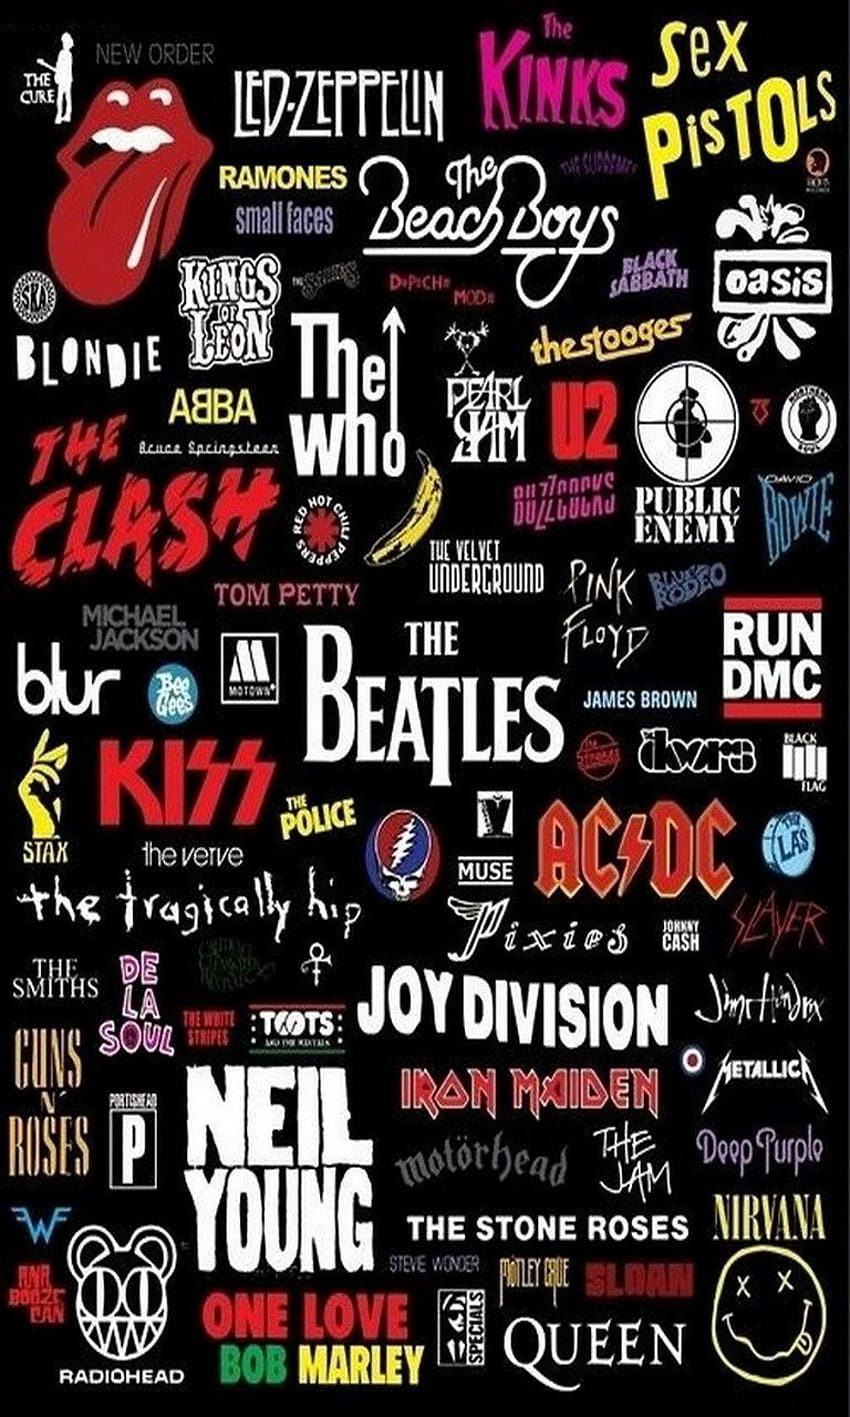 46+] Classic Rock Bands Wallpaper - WallpaperSafari